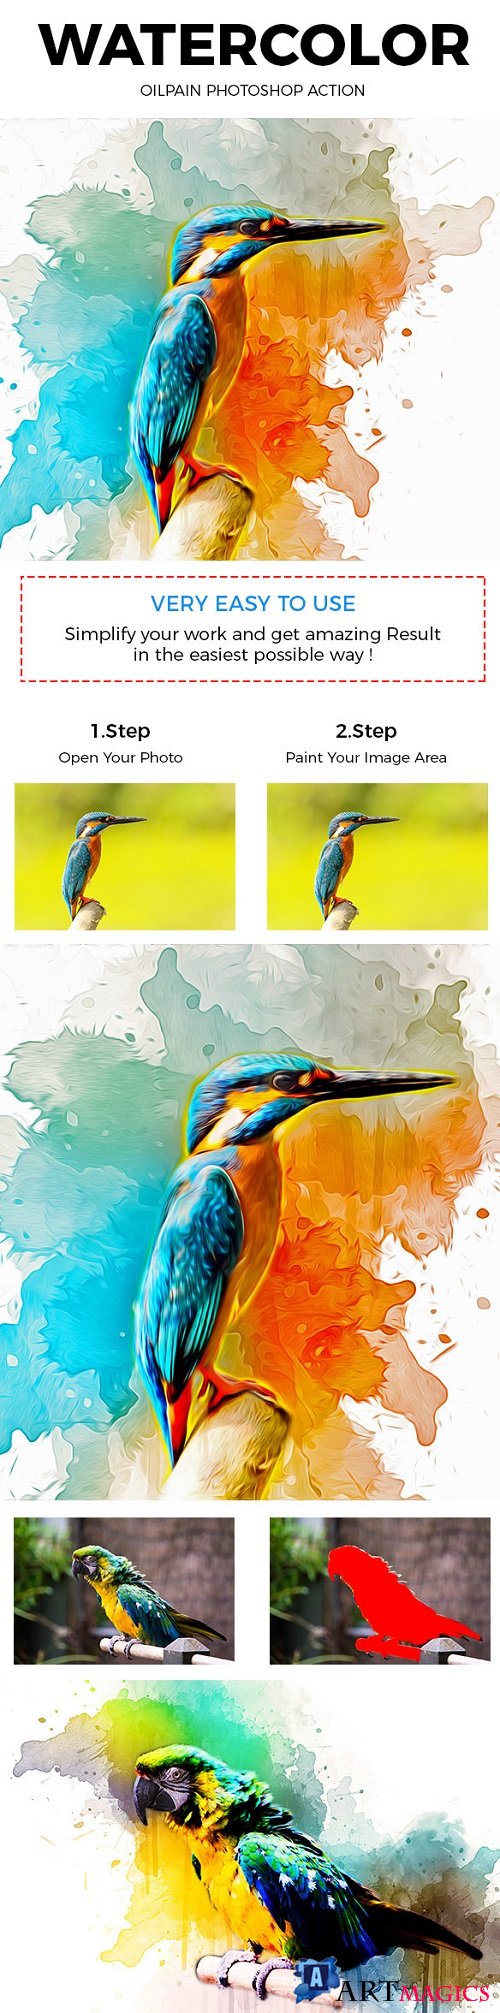 Watercolor Oil Paint Photoshop Action - 21015572